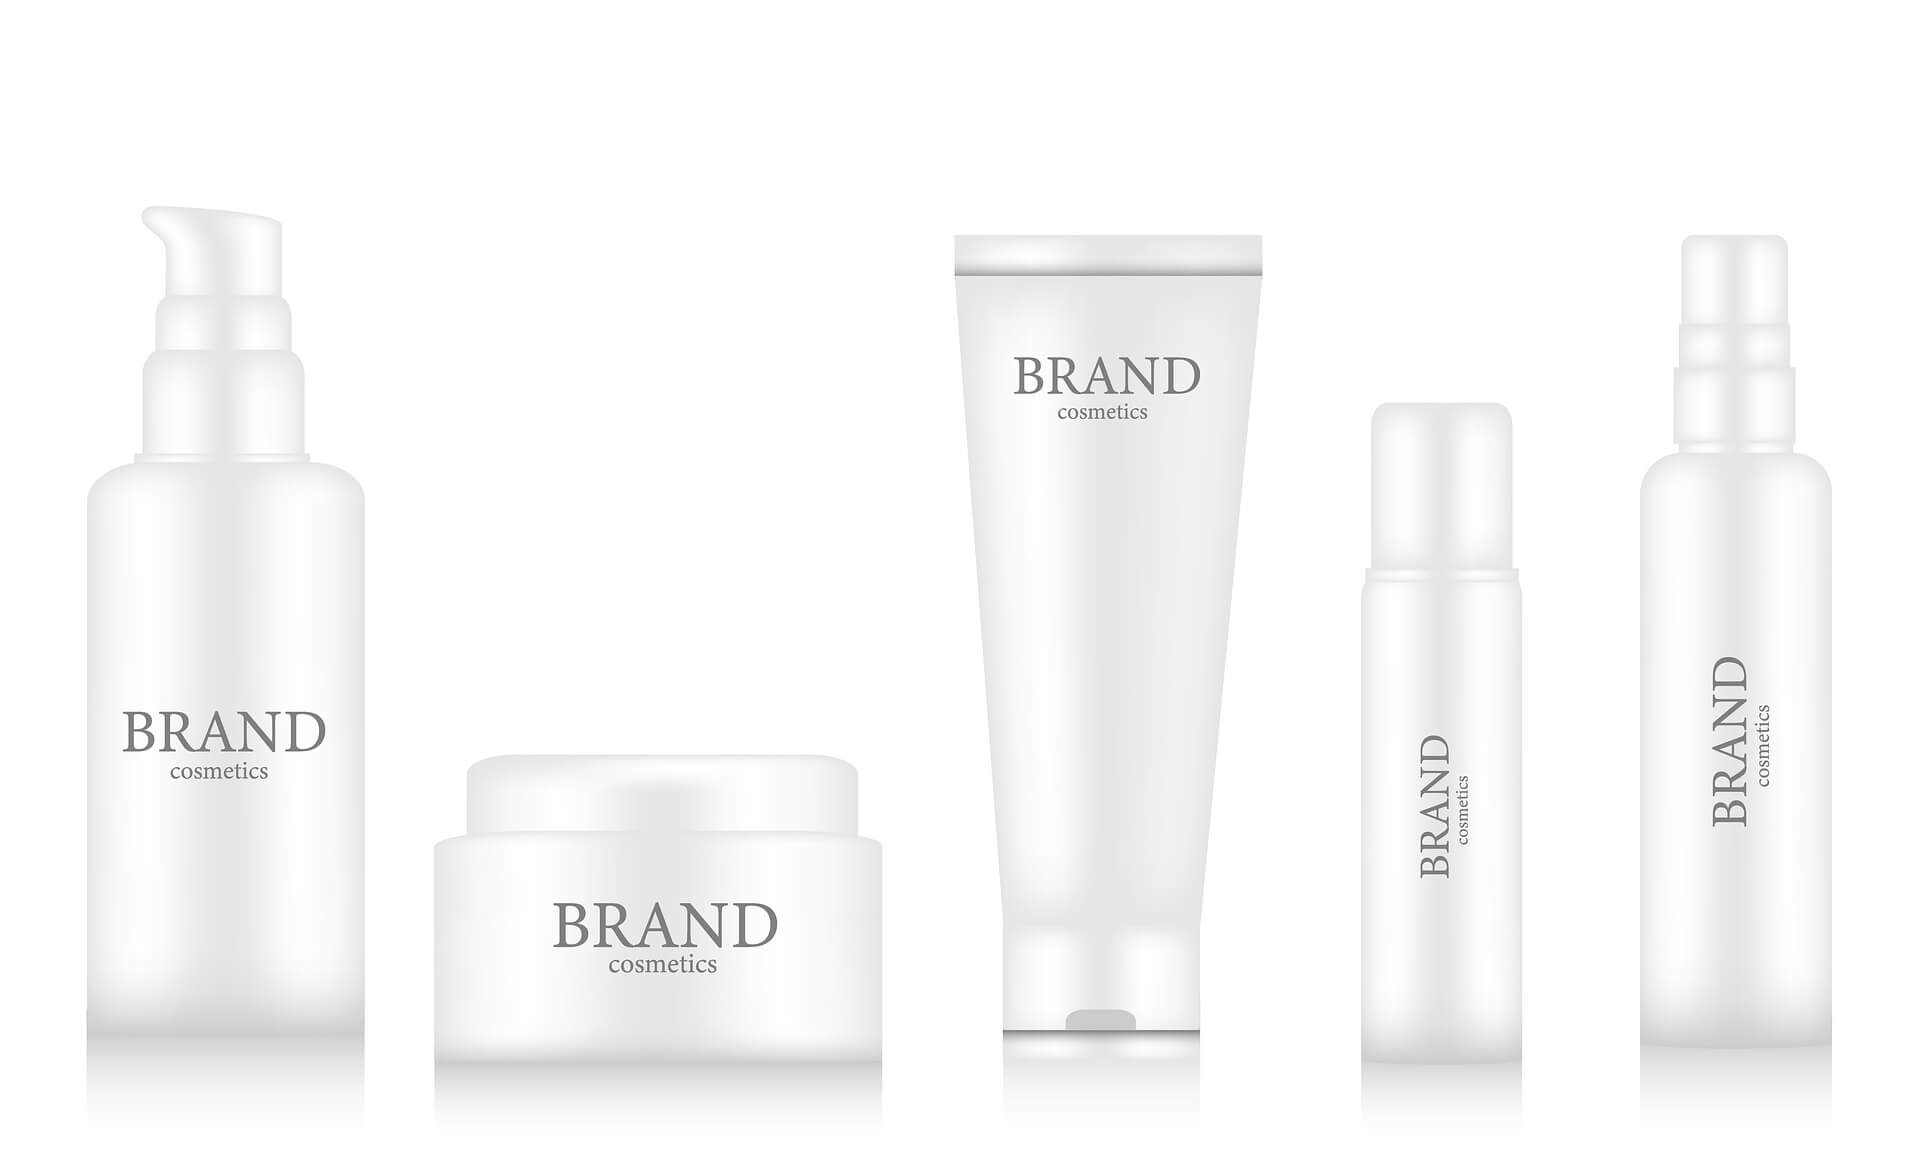 Como registrar uma marca 1 - Imagem de diversas embalagens de cosméticos com a palavra em inglês "Brand" ou "marca", sobre fundo branco.